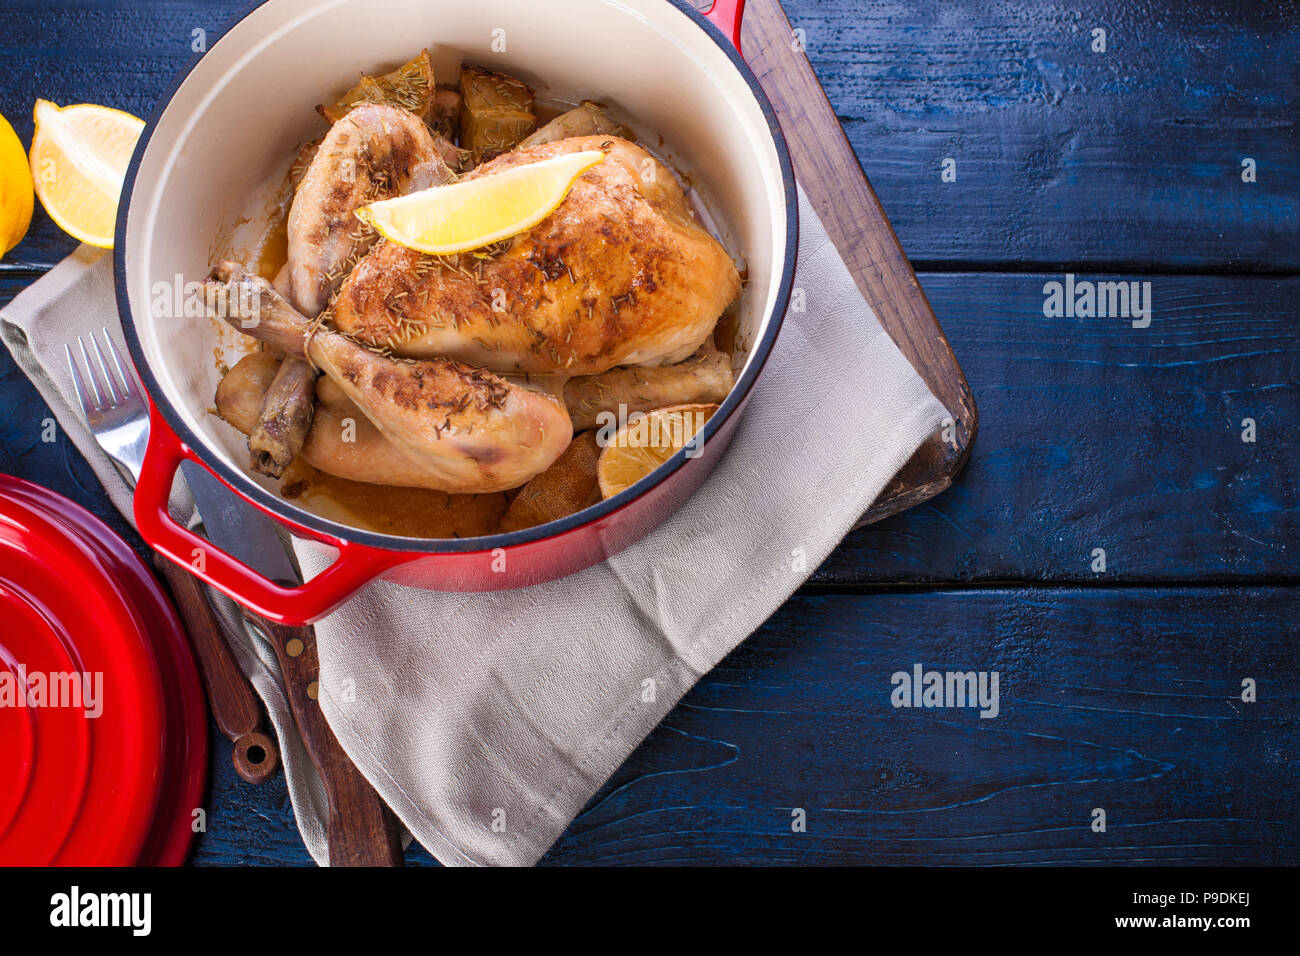 Le poulet entier cuit au four avec du citron et du romarin dans une fonte  rouge. Fond en bois bleu et gris serviette. Couteau et fourchette. Espace  libre pour le texte Photo